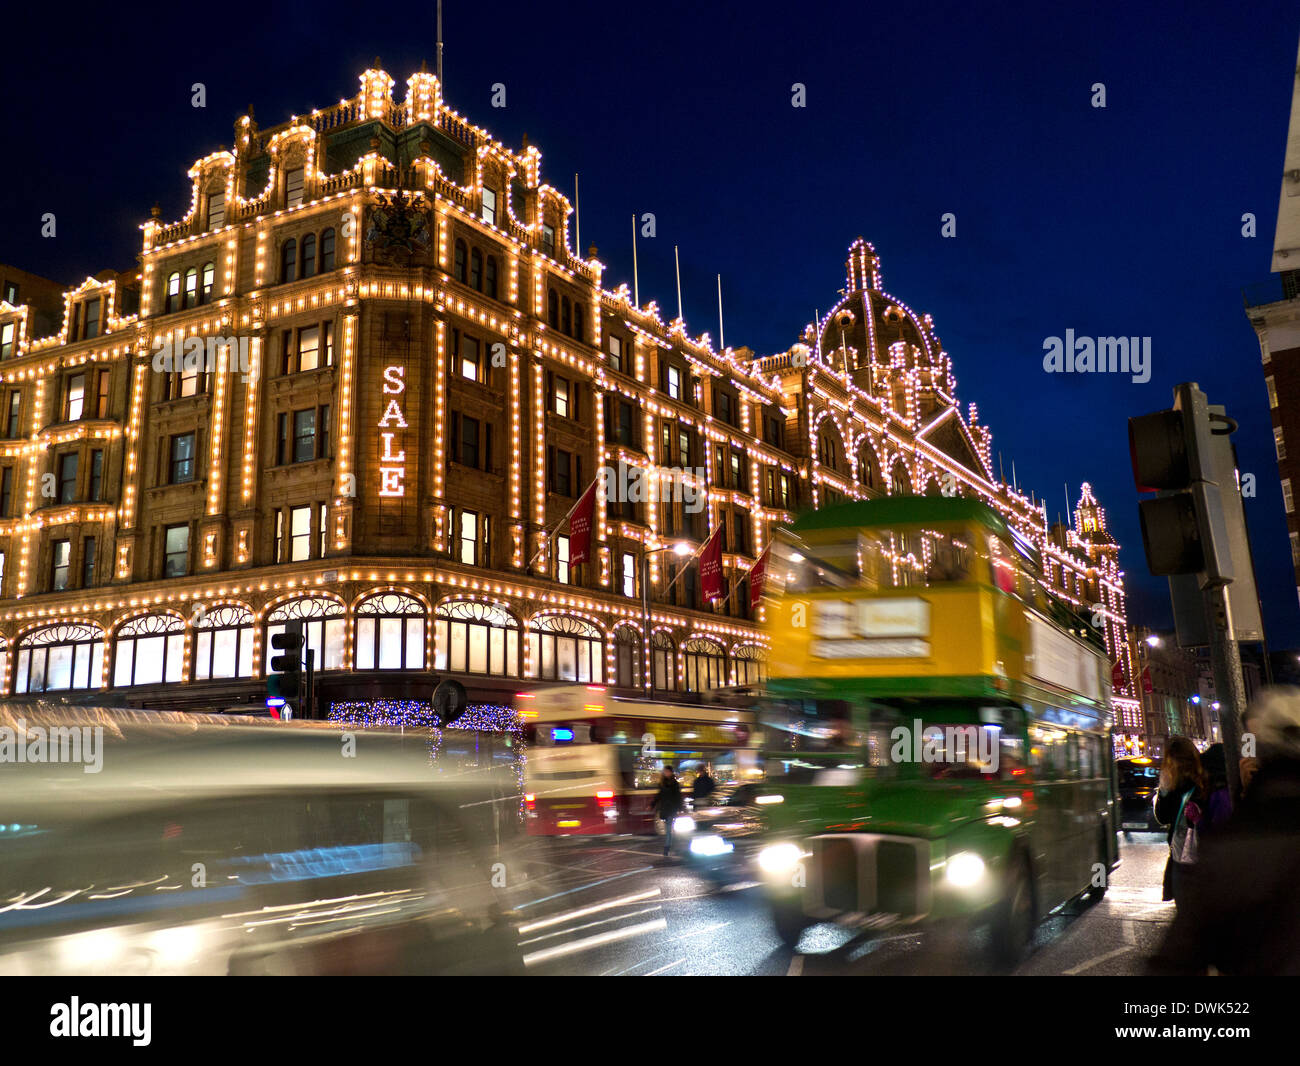 GRAND magasin HARRODS DE VENTE la nuit avec le signe « Sale » des acheteurs Et rétro de marque Harrods et trafic de passage Knightsbridge Londres SW1 Banque D'Images